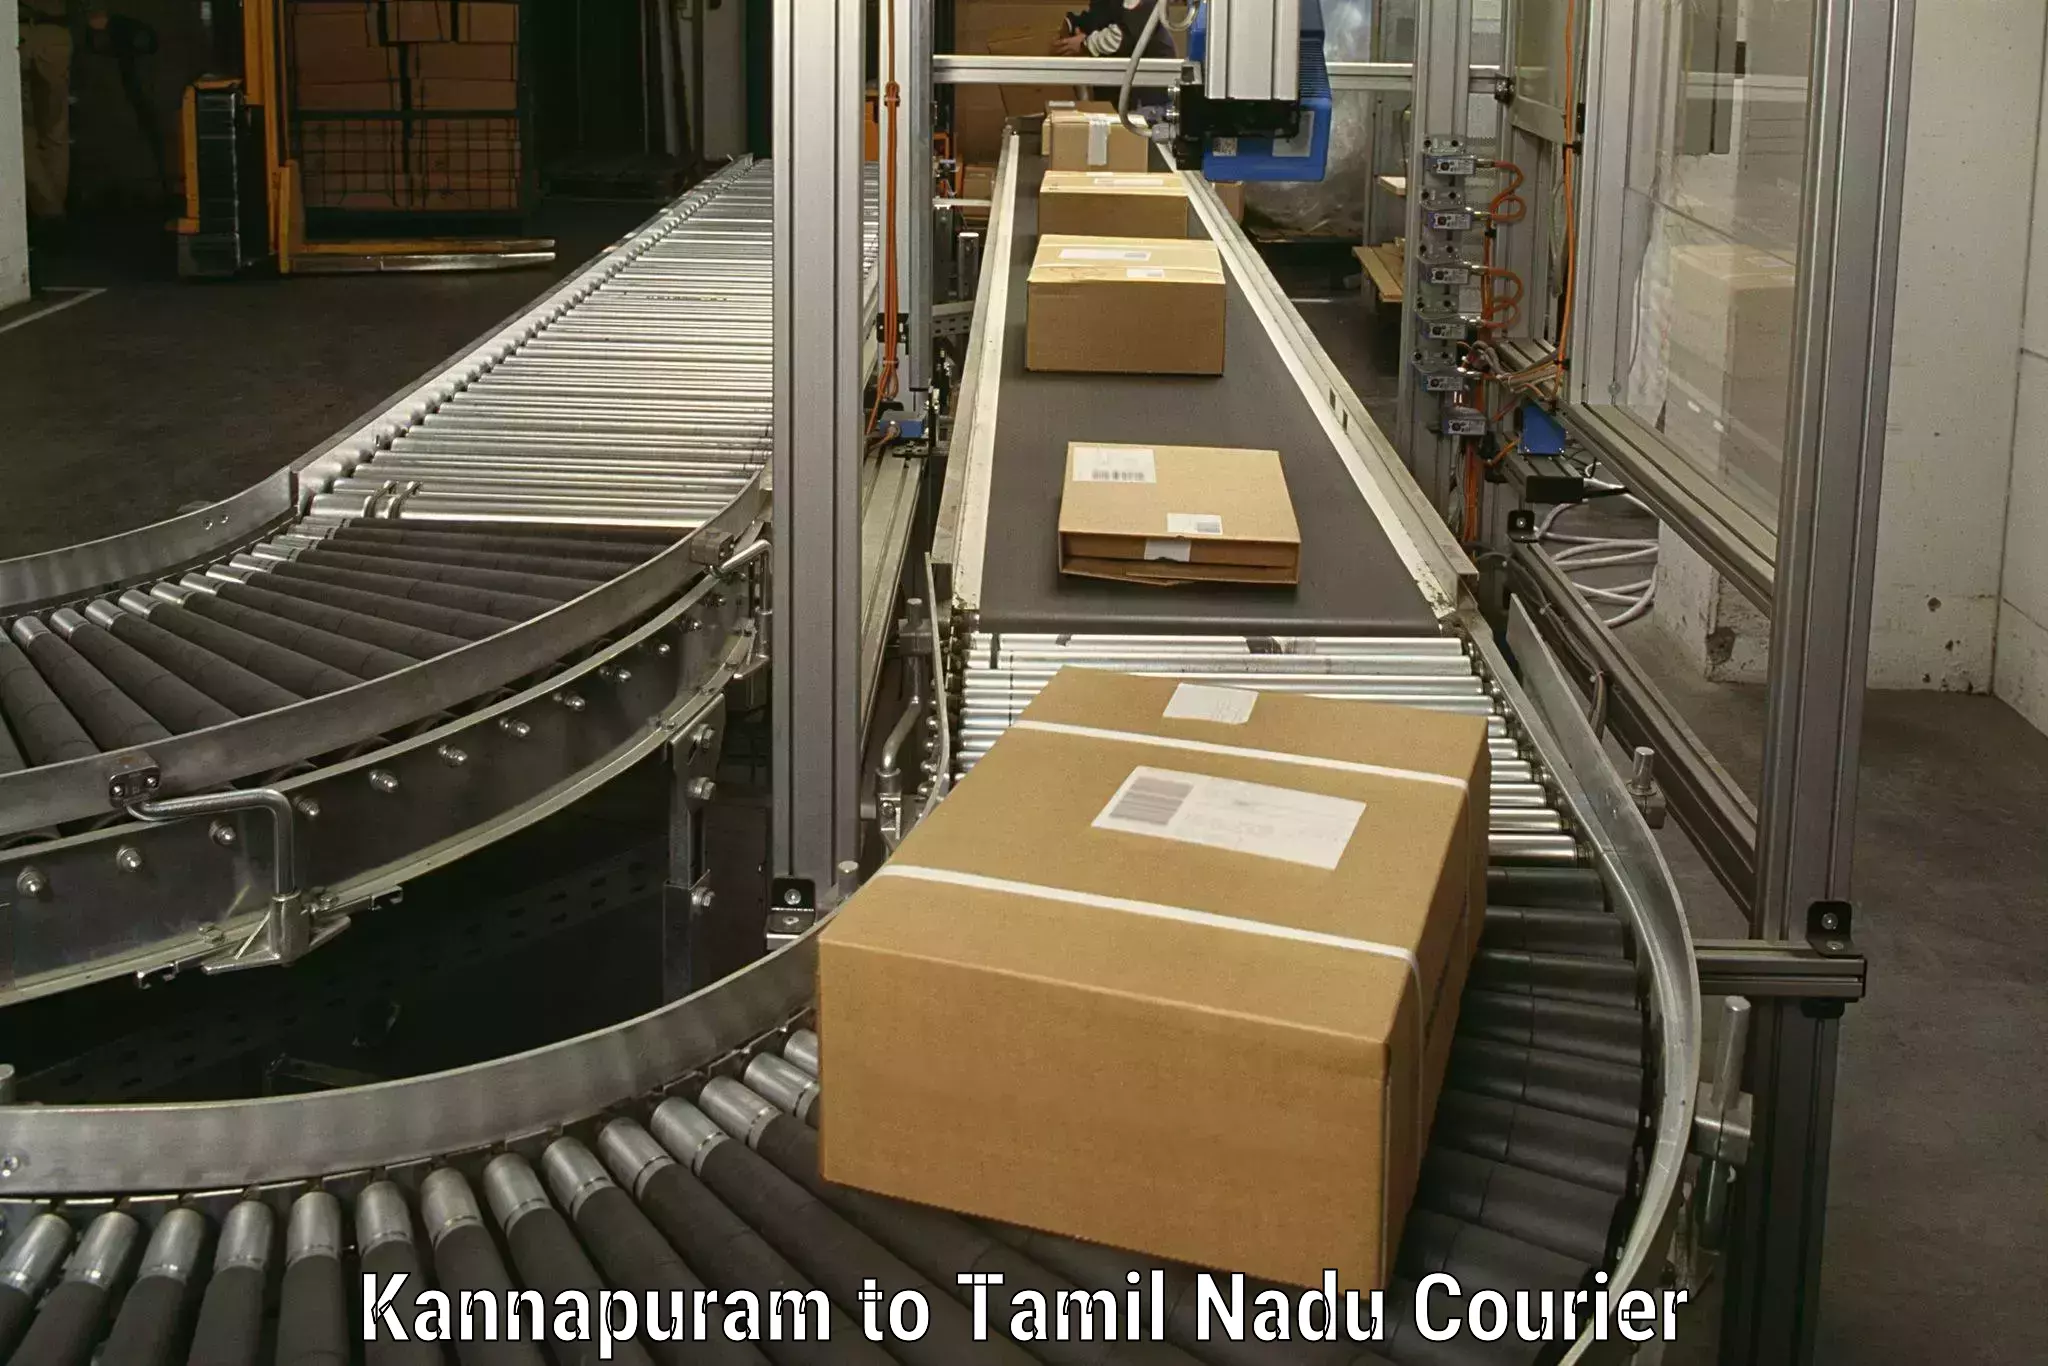 High-quality moving services Kannapuram to Thiruvadanai